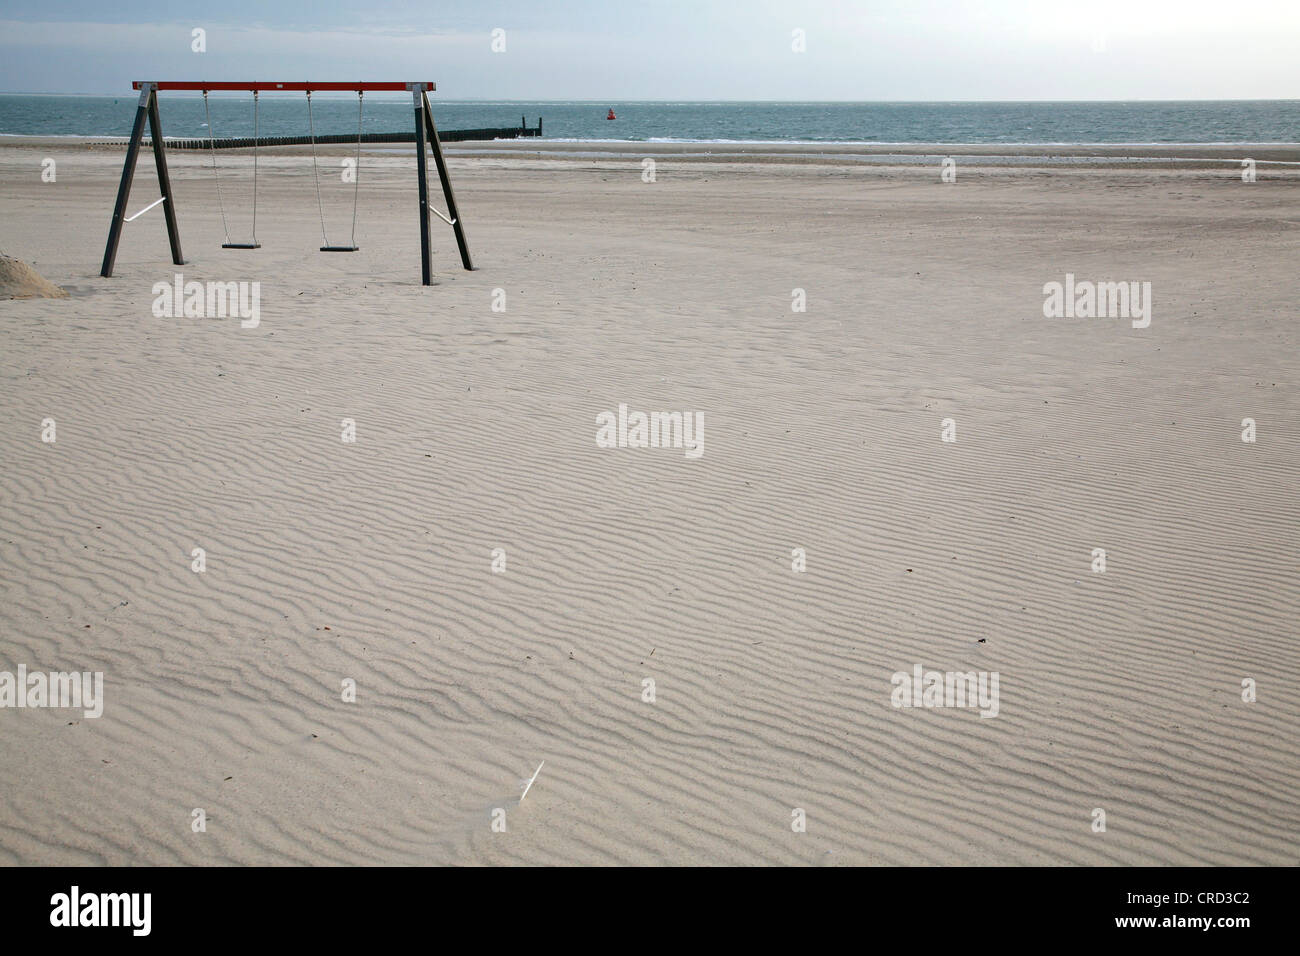 Jeux pour enfants sur la plage, Walcheren, Pays-Bas Banque D'Images